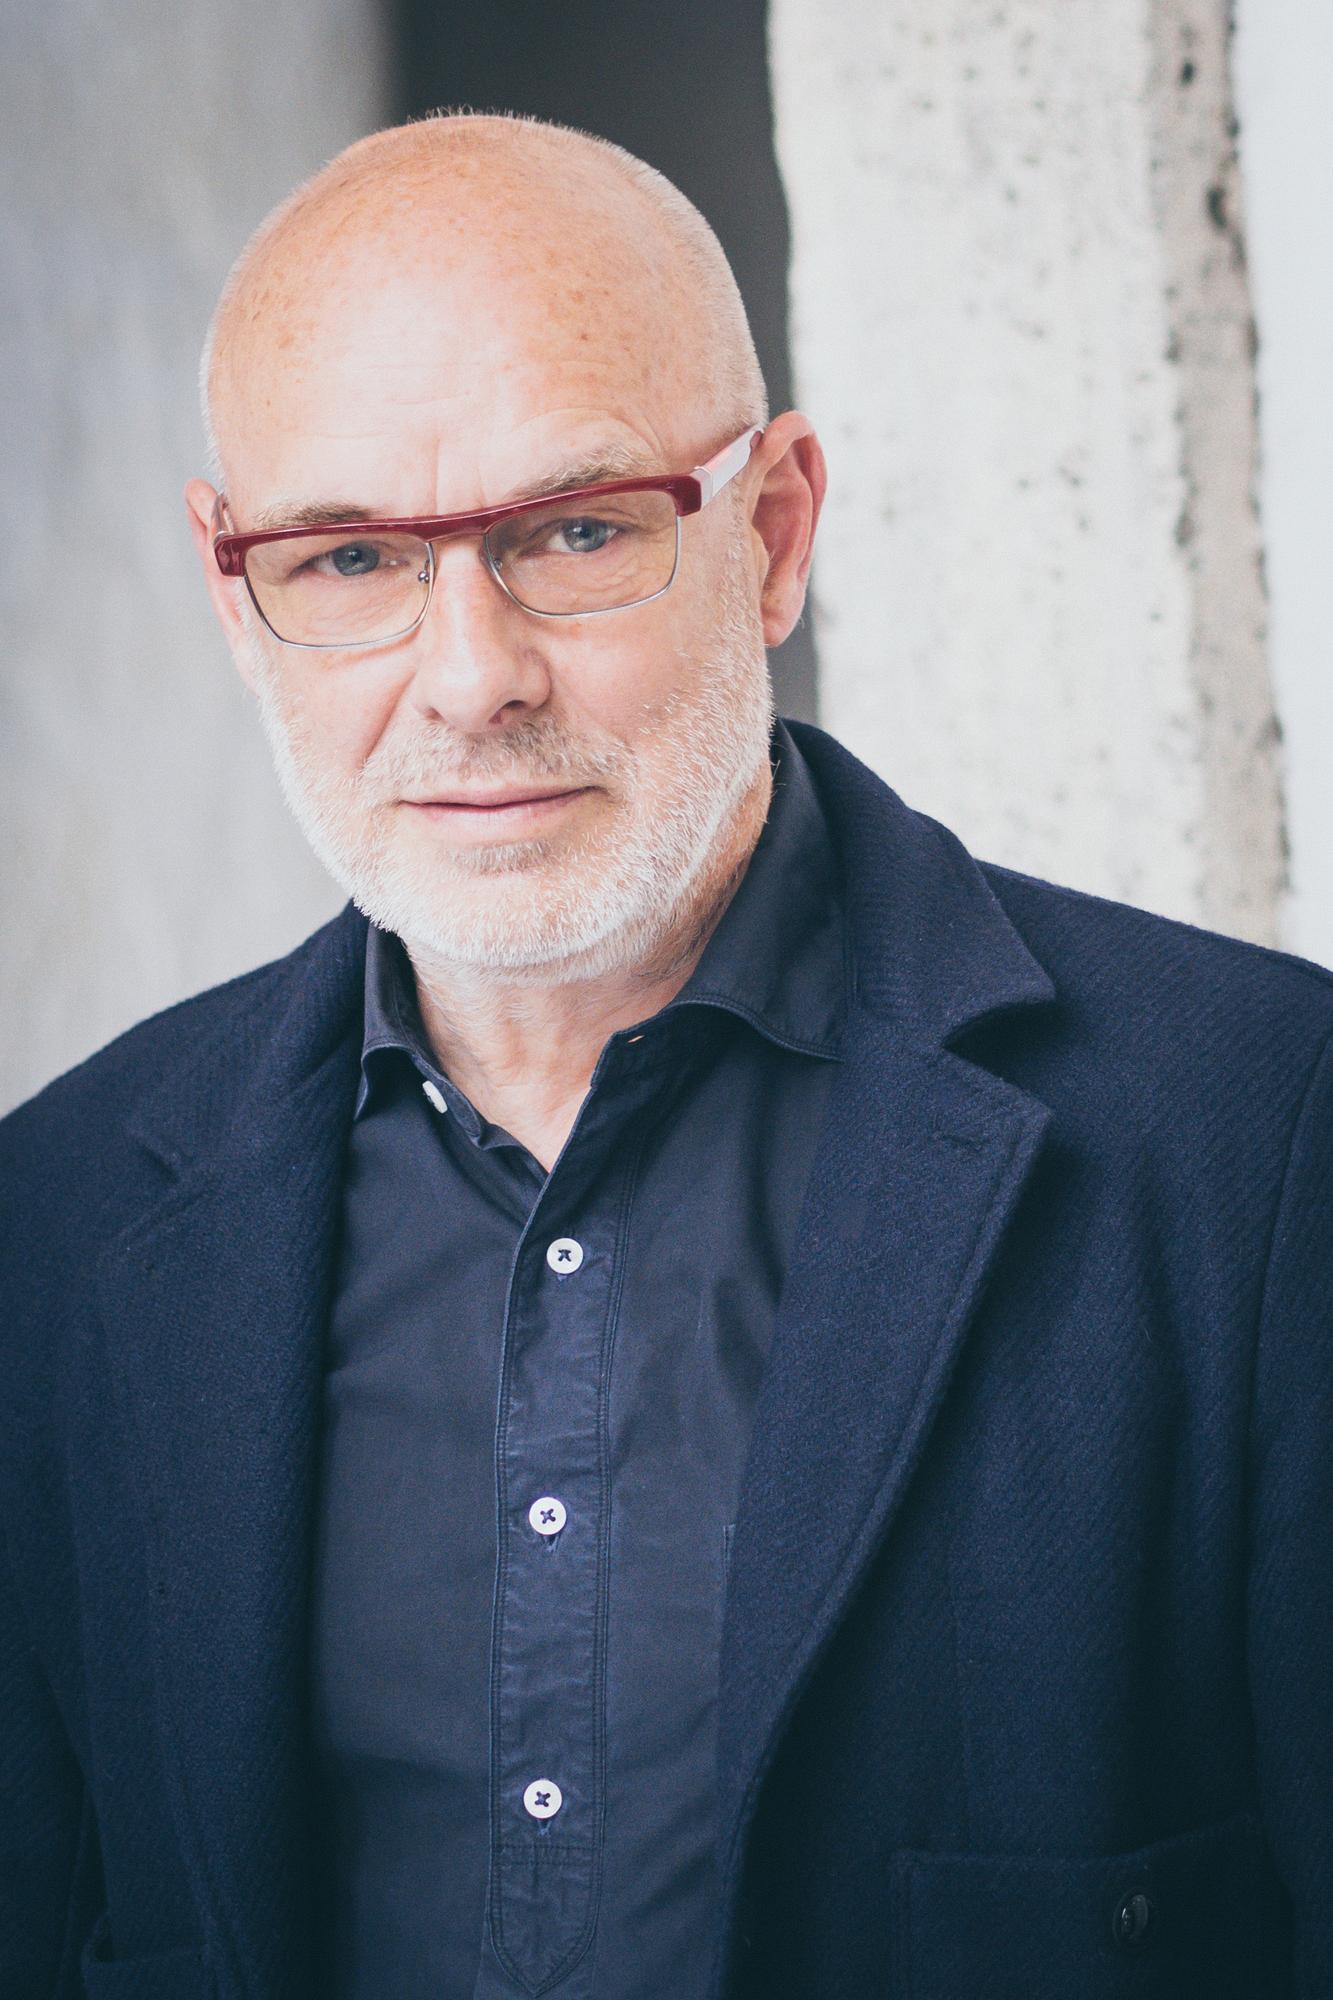 Portrait de Brian Eno. [NurPhoto - Luca Carlino]